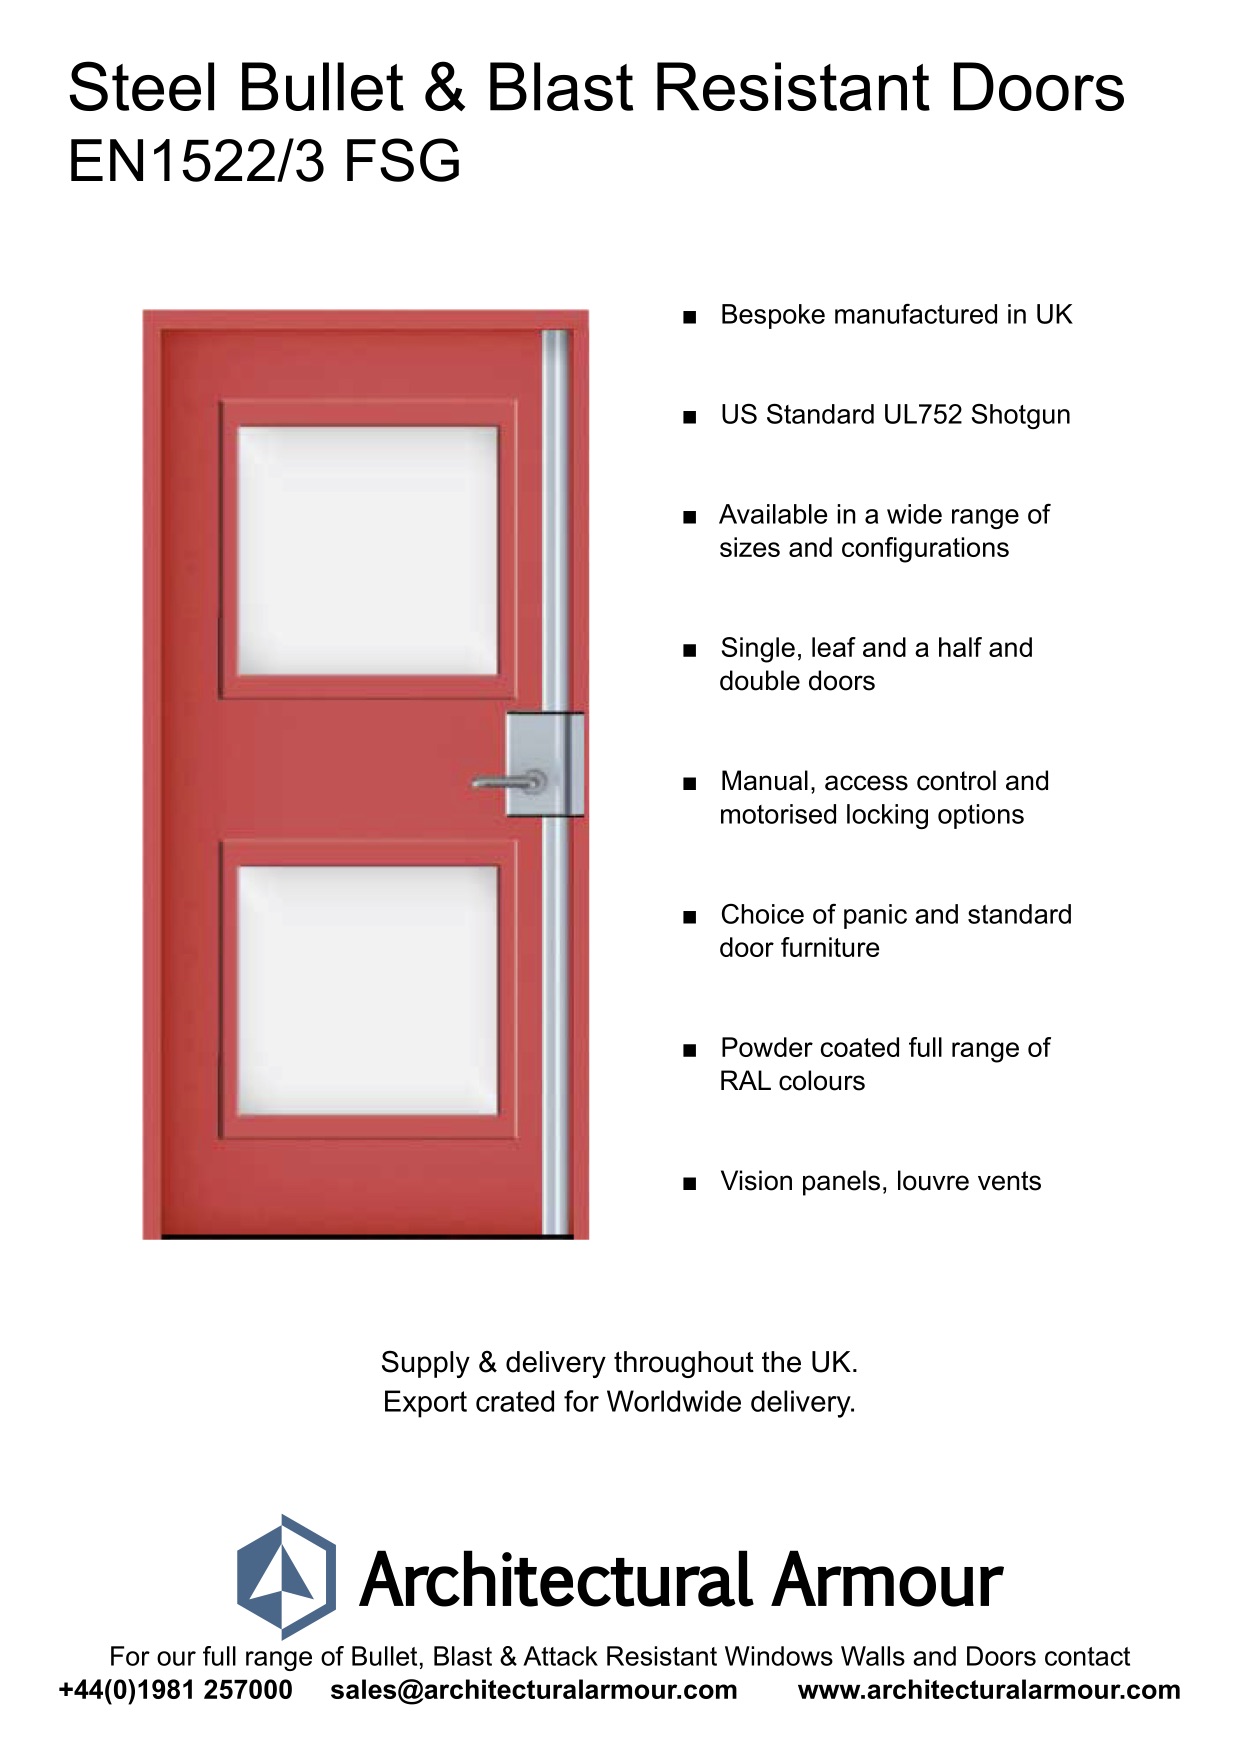 Bullet-and-Blast-Resistant-Steel-Doors-Vision-Panel-EN1522-3-FSG-SG2-UK